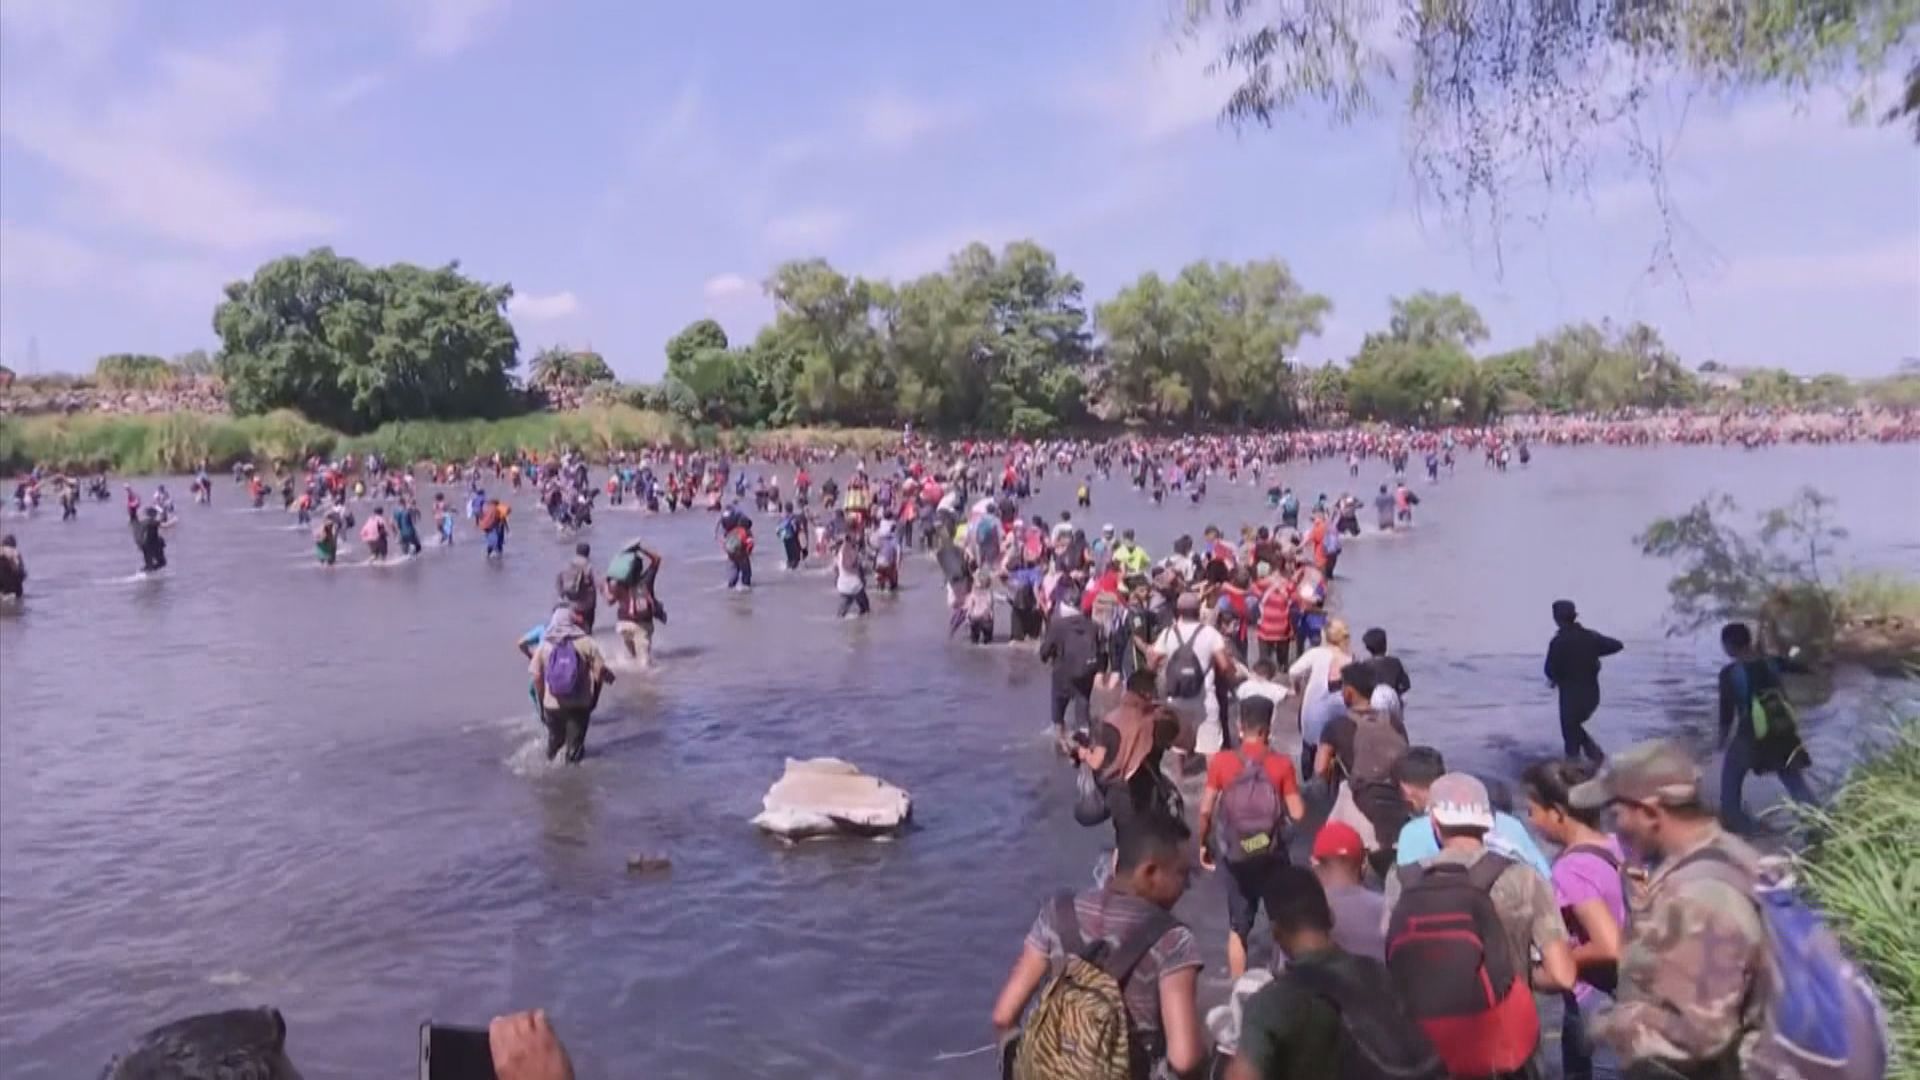 大批移民試圖進入墨西哥遭警驅散